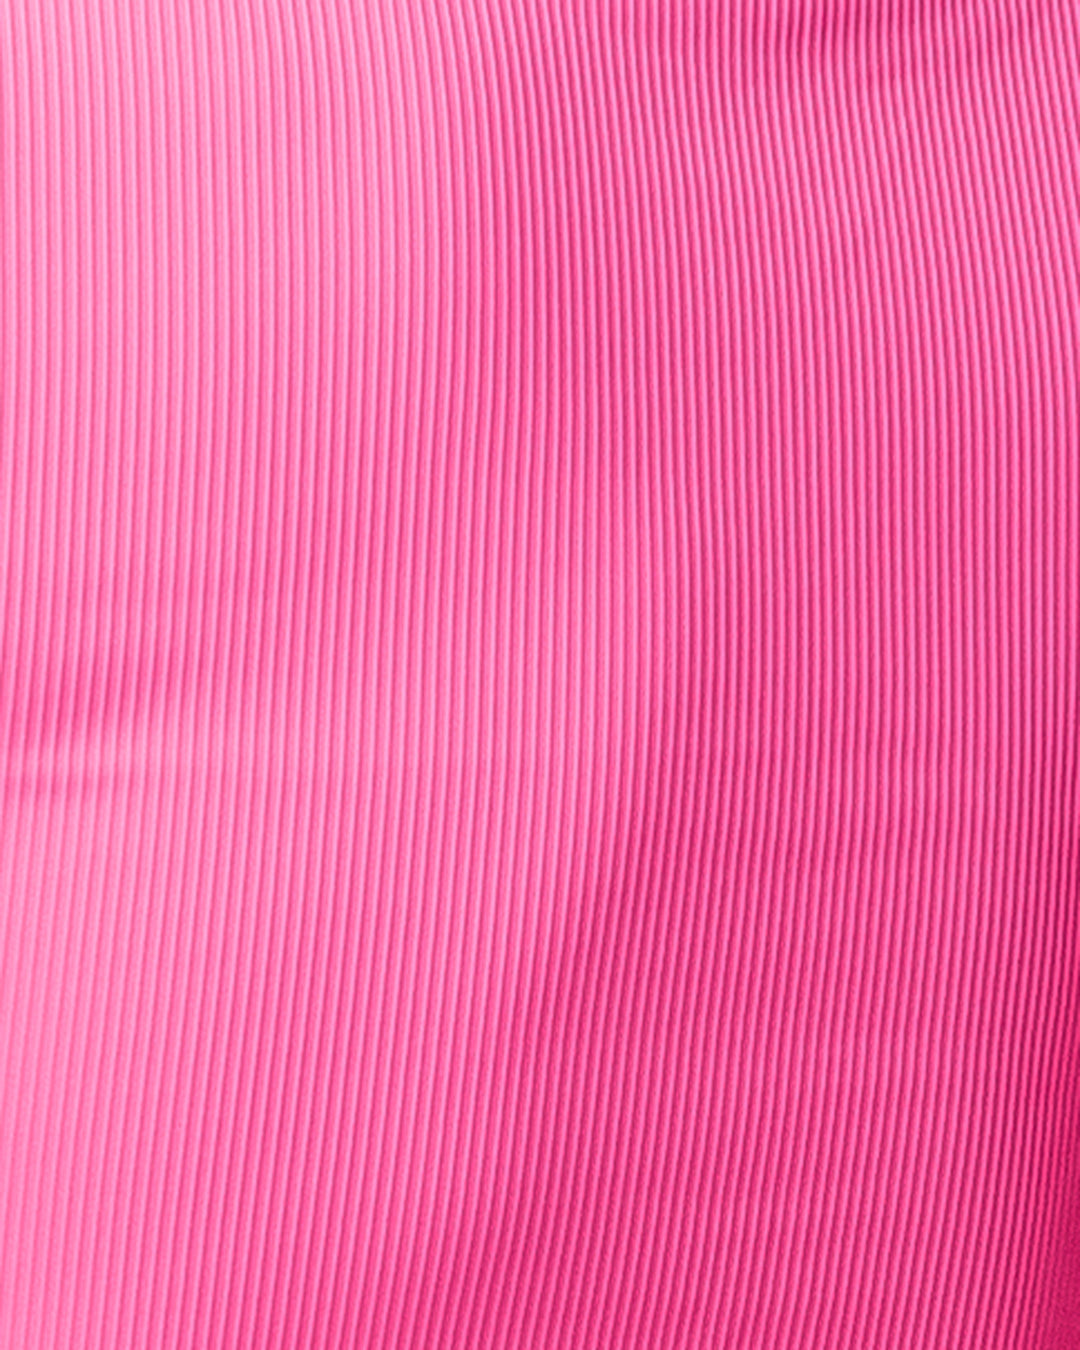 kadyluxe-womens-pocket-ilegging-pink-closeup-texture